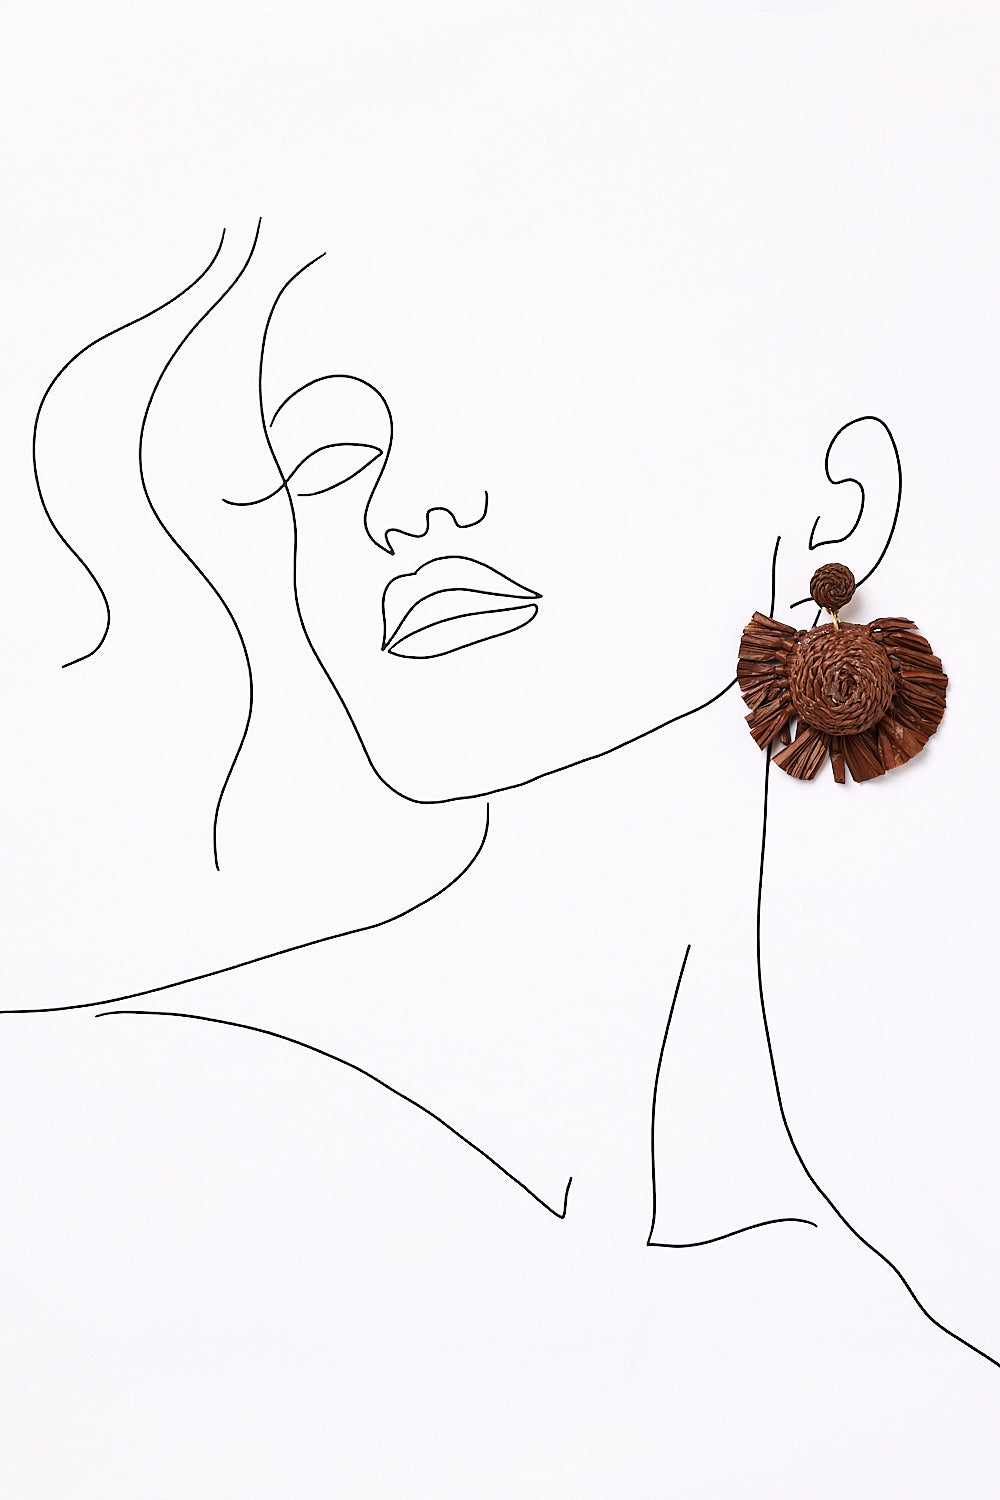 Woven Fringe Earrings in Chocolate